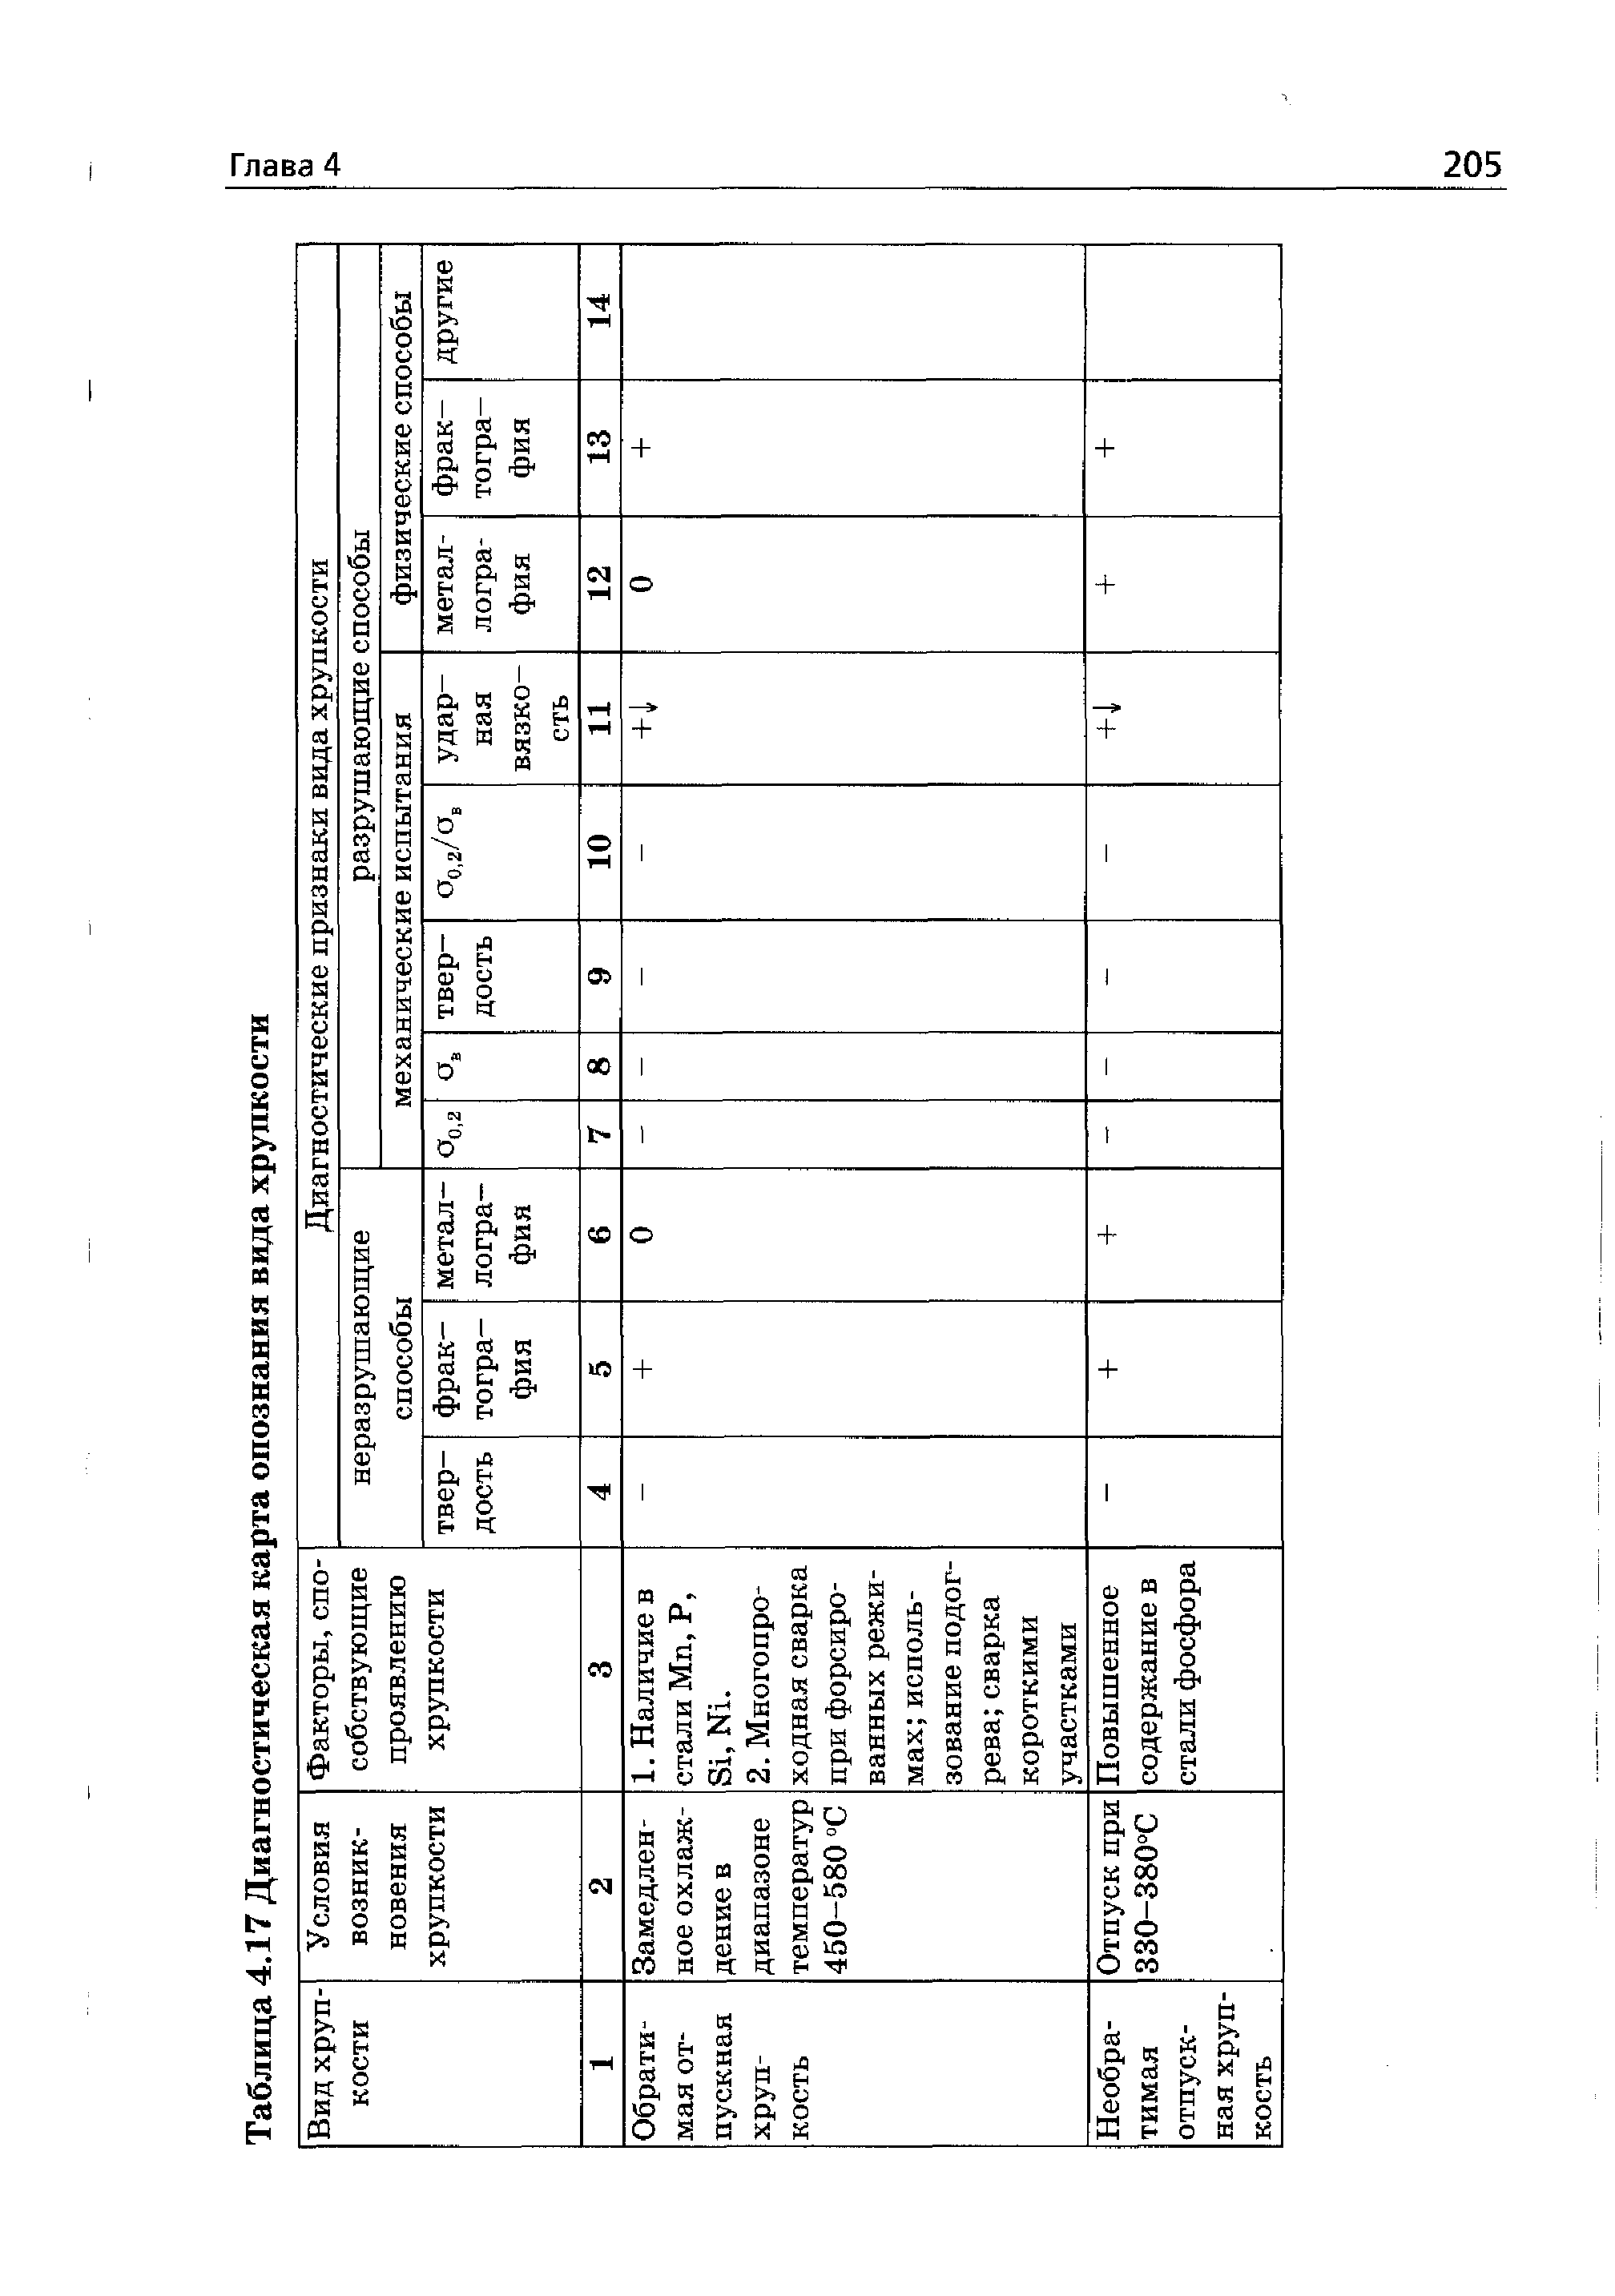 Таблица 4.17 Диагностическая карта опознания ввда хрупкости
